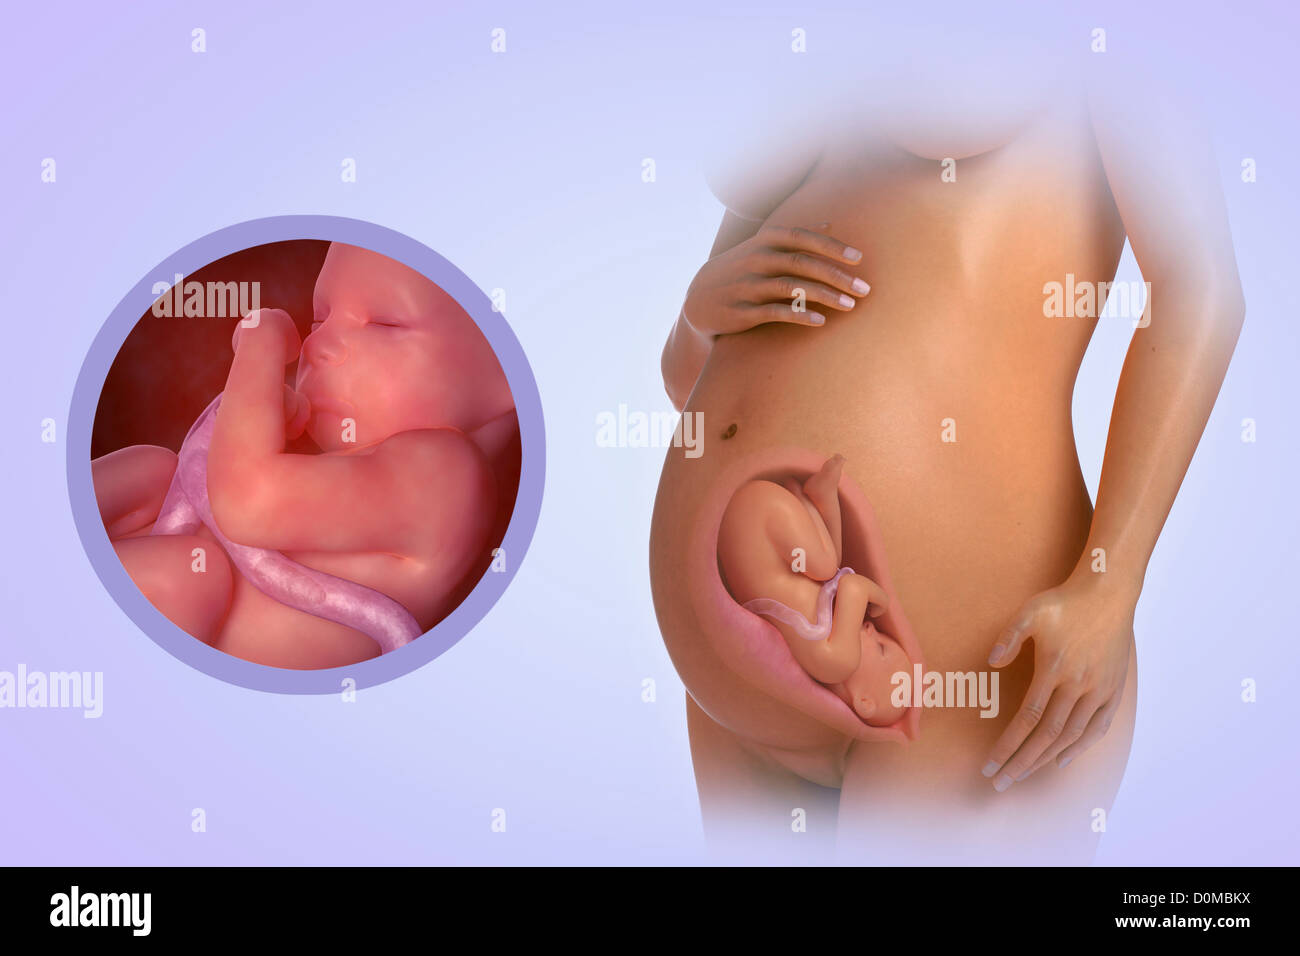 Un modelo humano mostrando el embarazo en la semana 31. Foto de stock